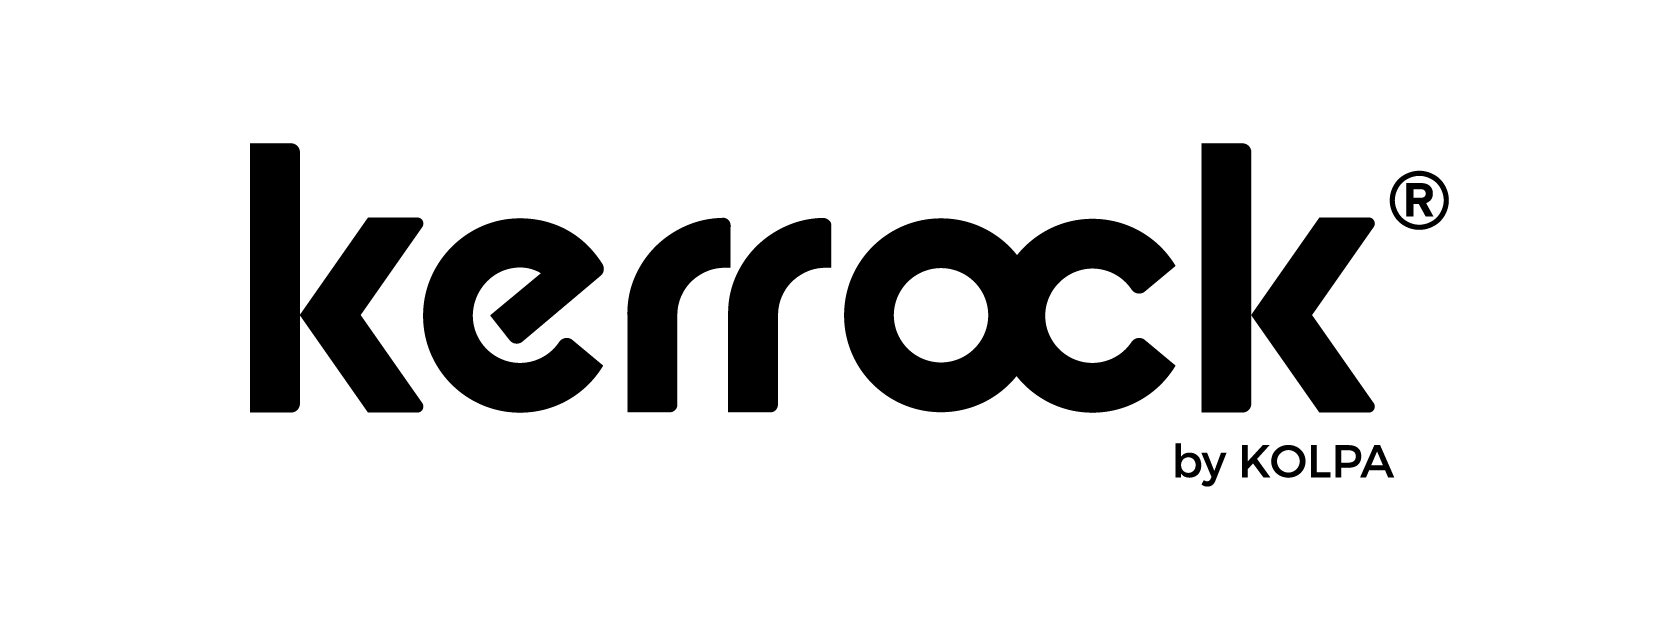 04 - Kerrock_logo-02